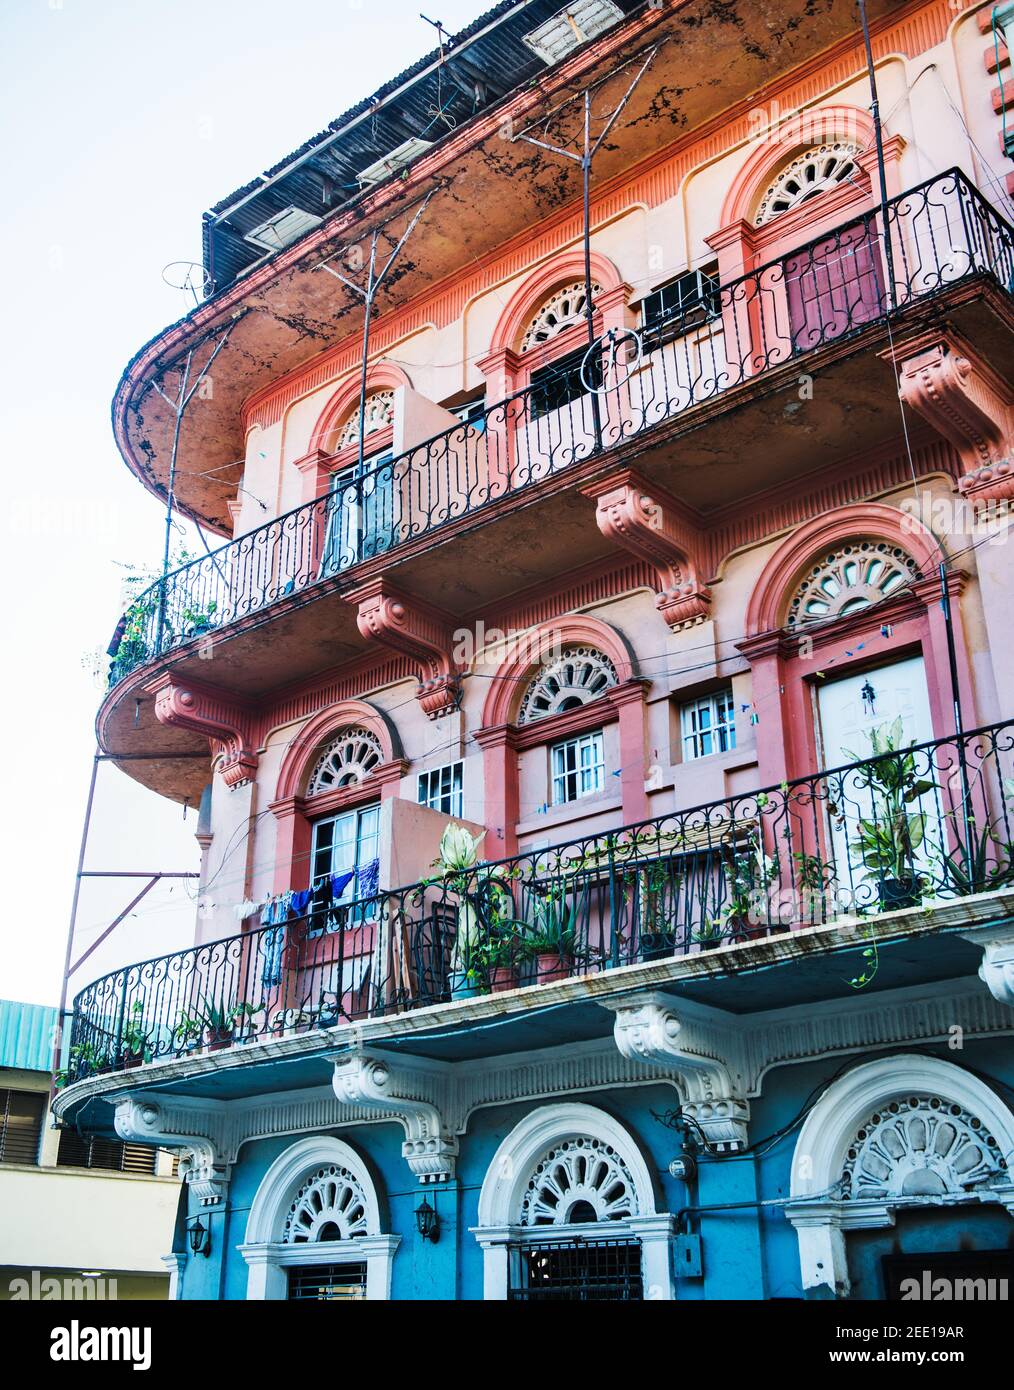 Architecture coloniale espagnole colorée de Panama, Panama, Amérique centrale Banque D'Images